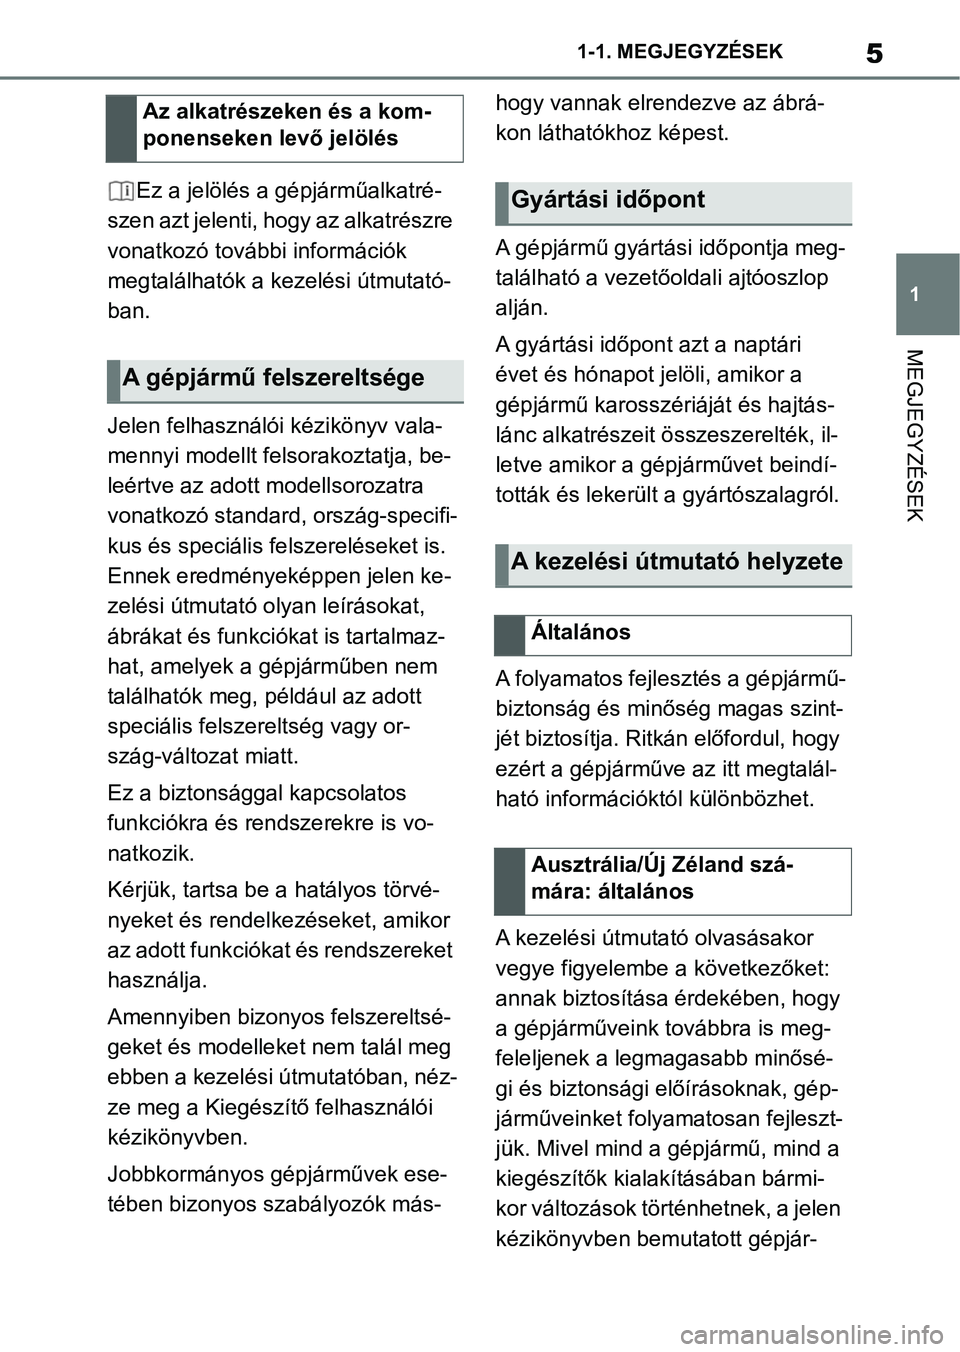 TOYOTA SUPRA 2020  Kezelési útmutató (in Hungarian) 5
1
1-1. MEGJEGYZÉSEK
MEGJEGYZÉSEK
Ez a jelölés a gépjárműalkatré-
szen azt jelenti, hogy az alkatrészre 
vonatkozó további információk 
megtalálhatók a kezelési útmutató-
ban.
Jelen